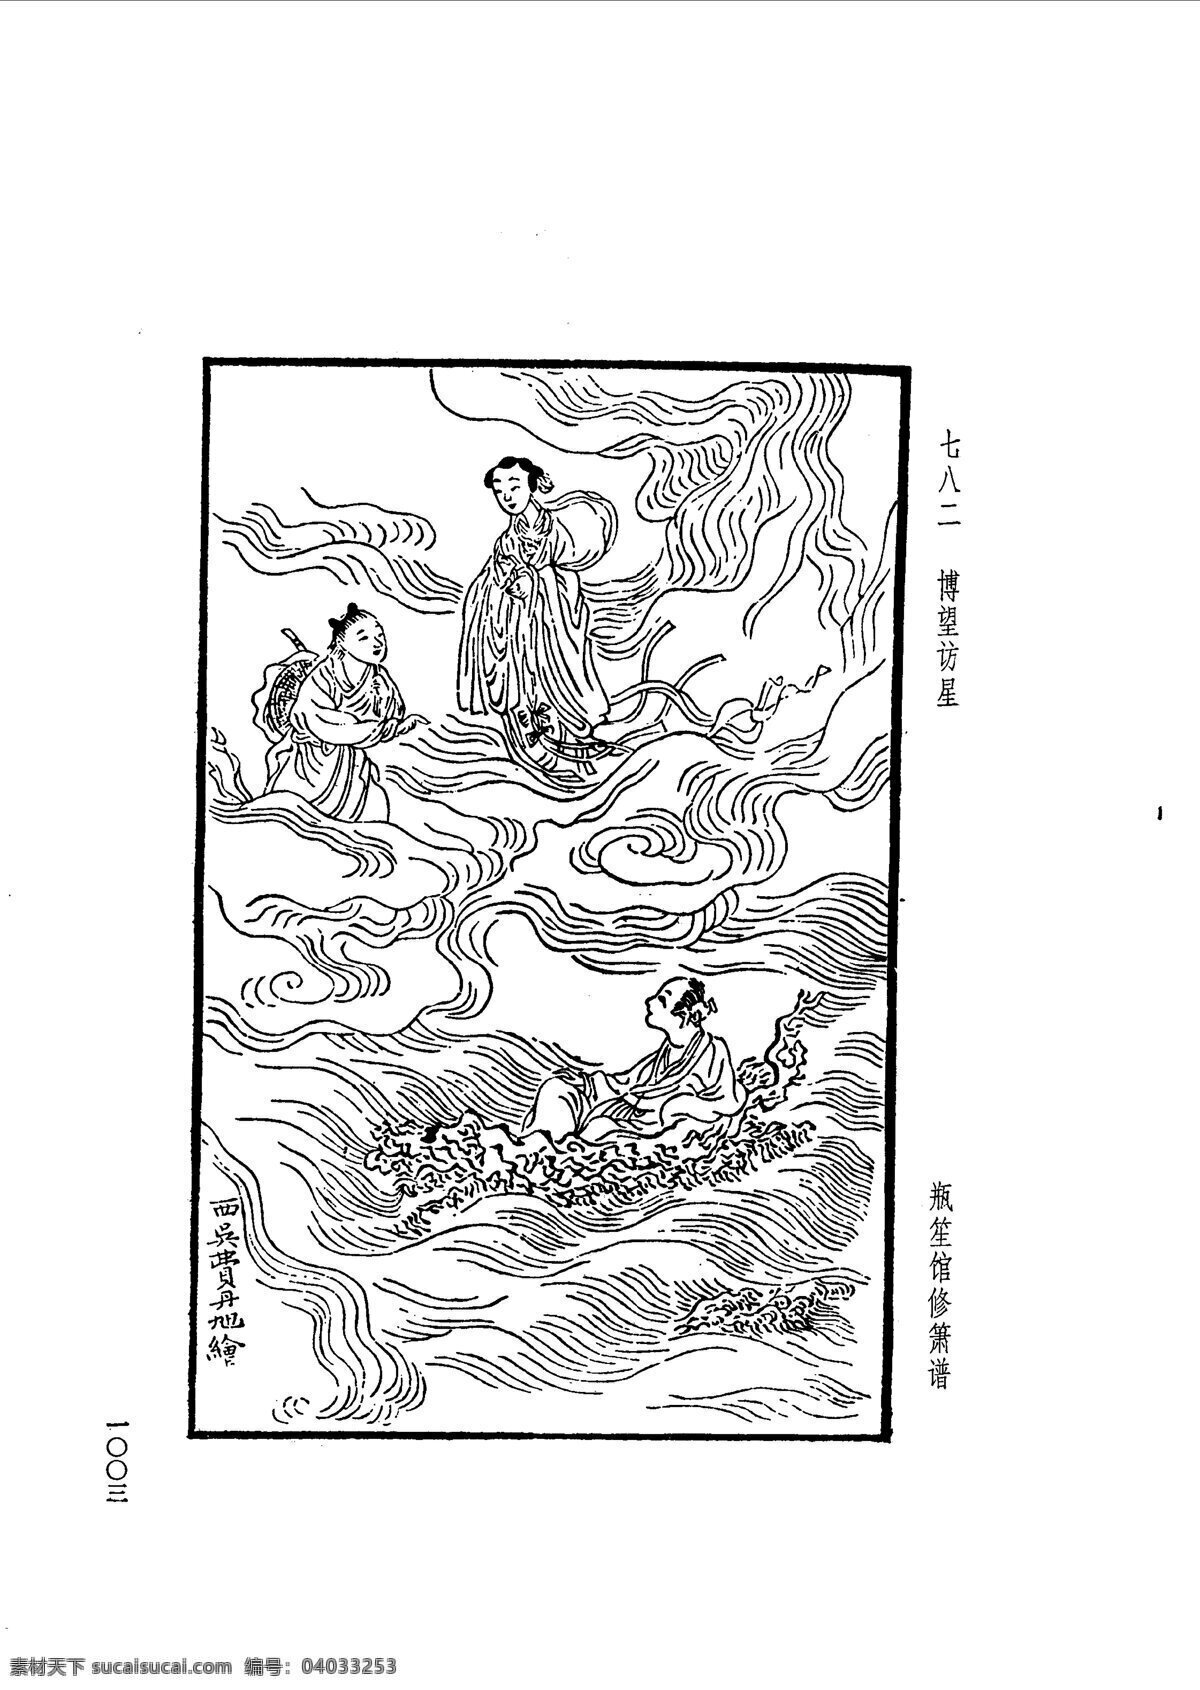 中国 古典文学 版画 选集 上 下册1031 设计素材 版画世界 书画美术 白色